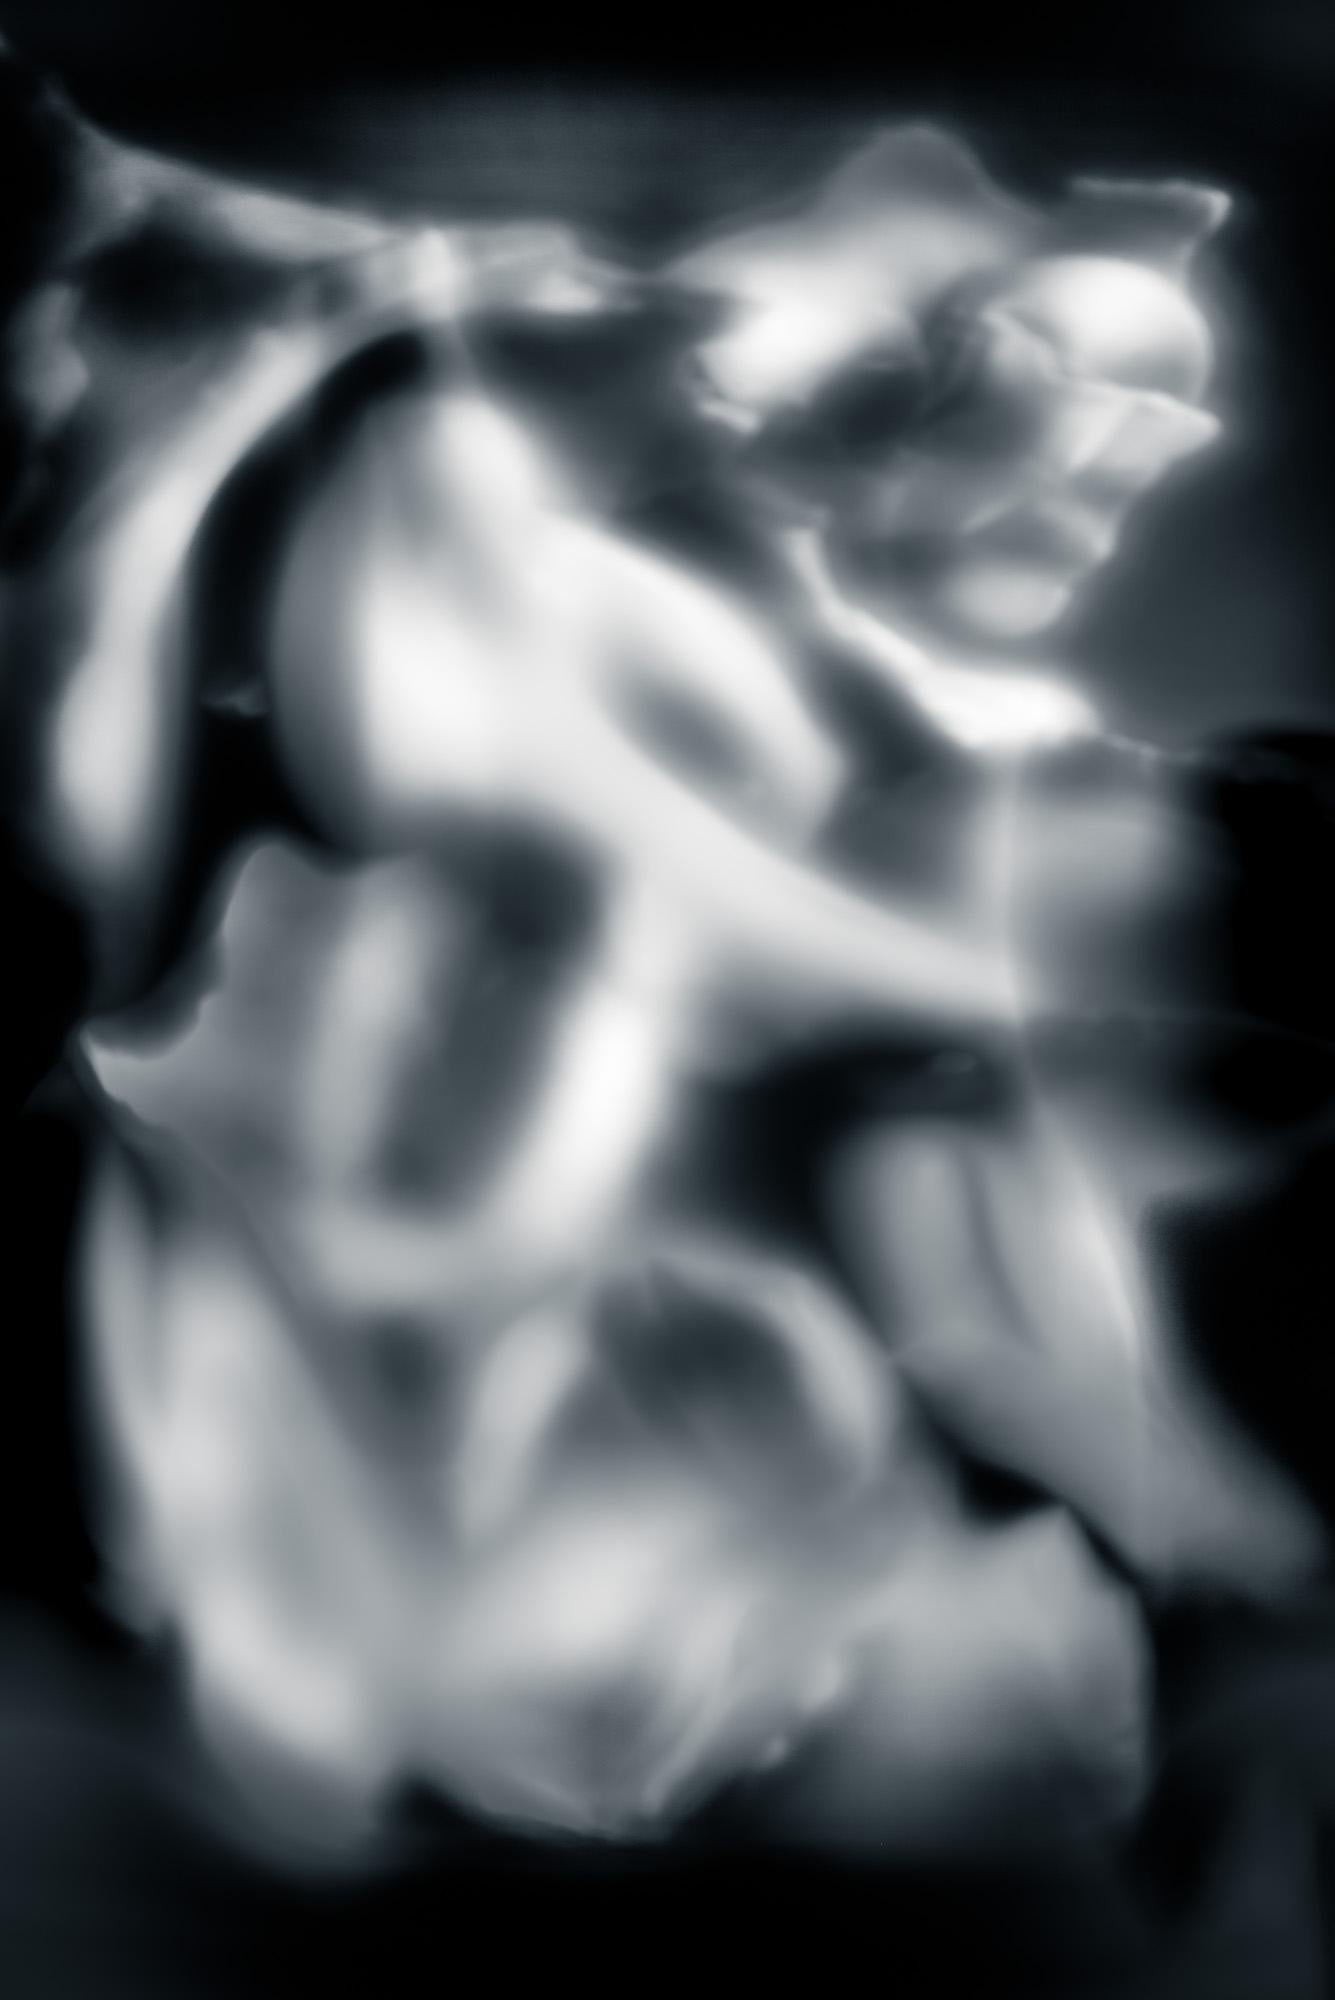 Abstract Photograph Howard Lewis - Photographie abstraite en noir et blanc - Moments d'évolution #37 20 x 24